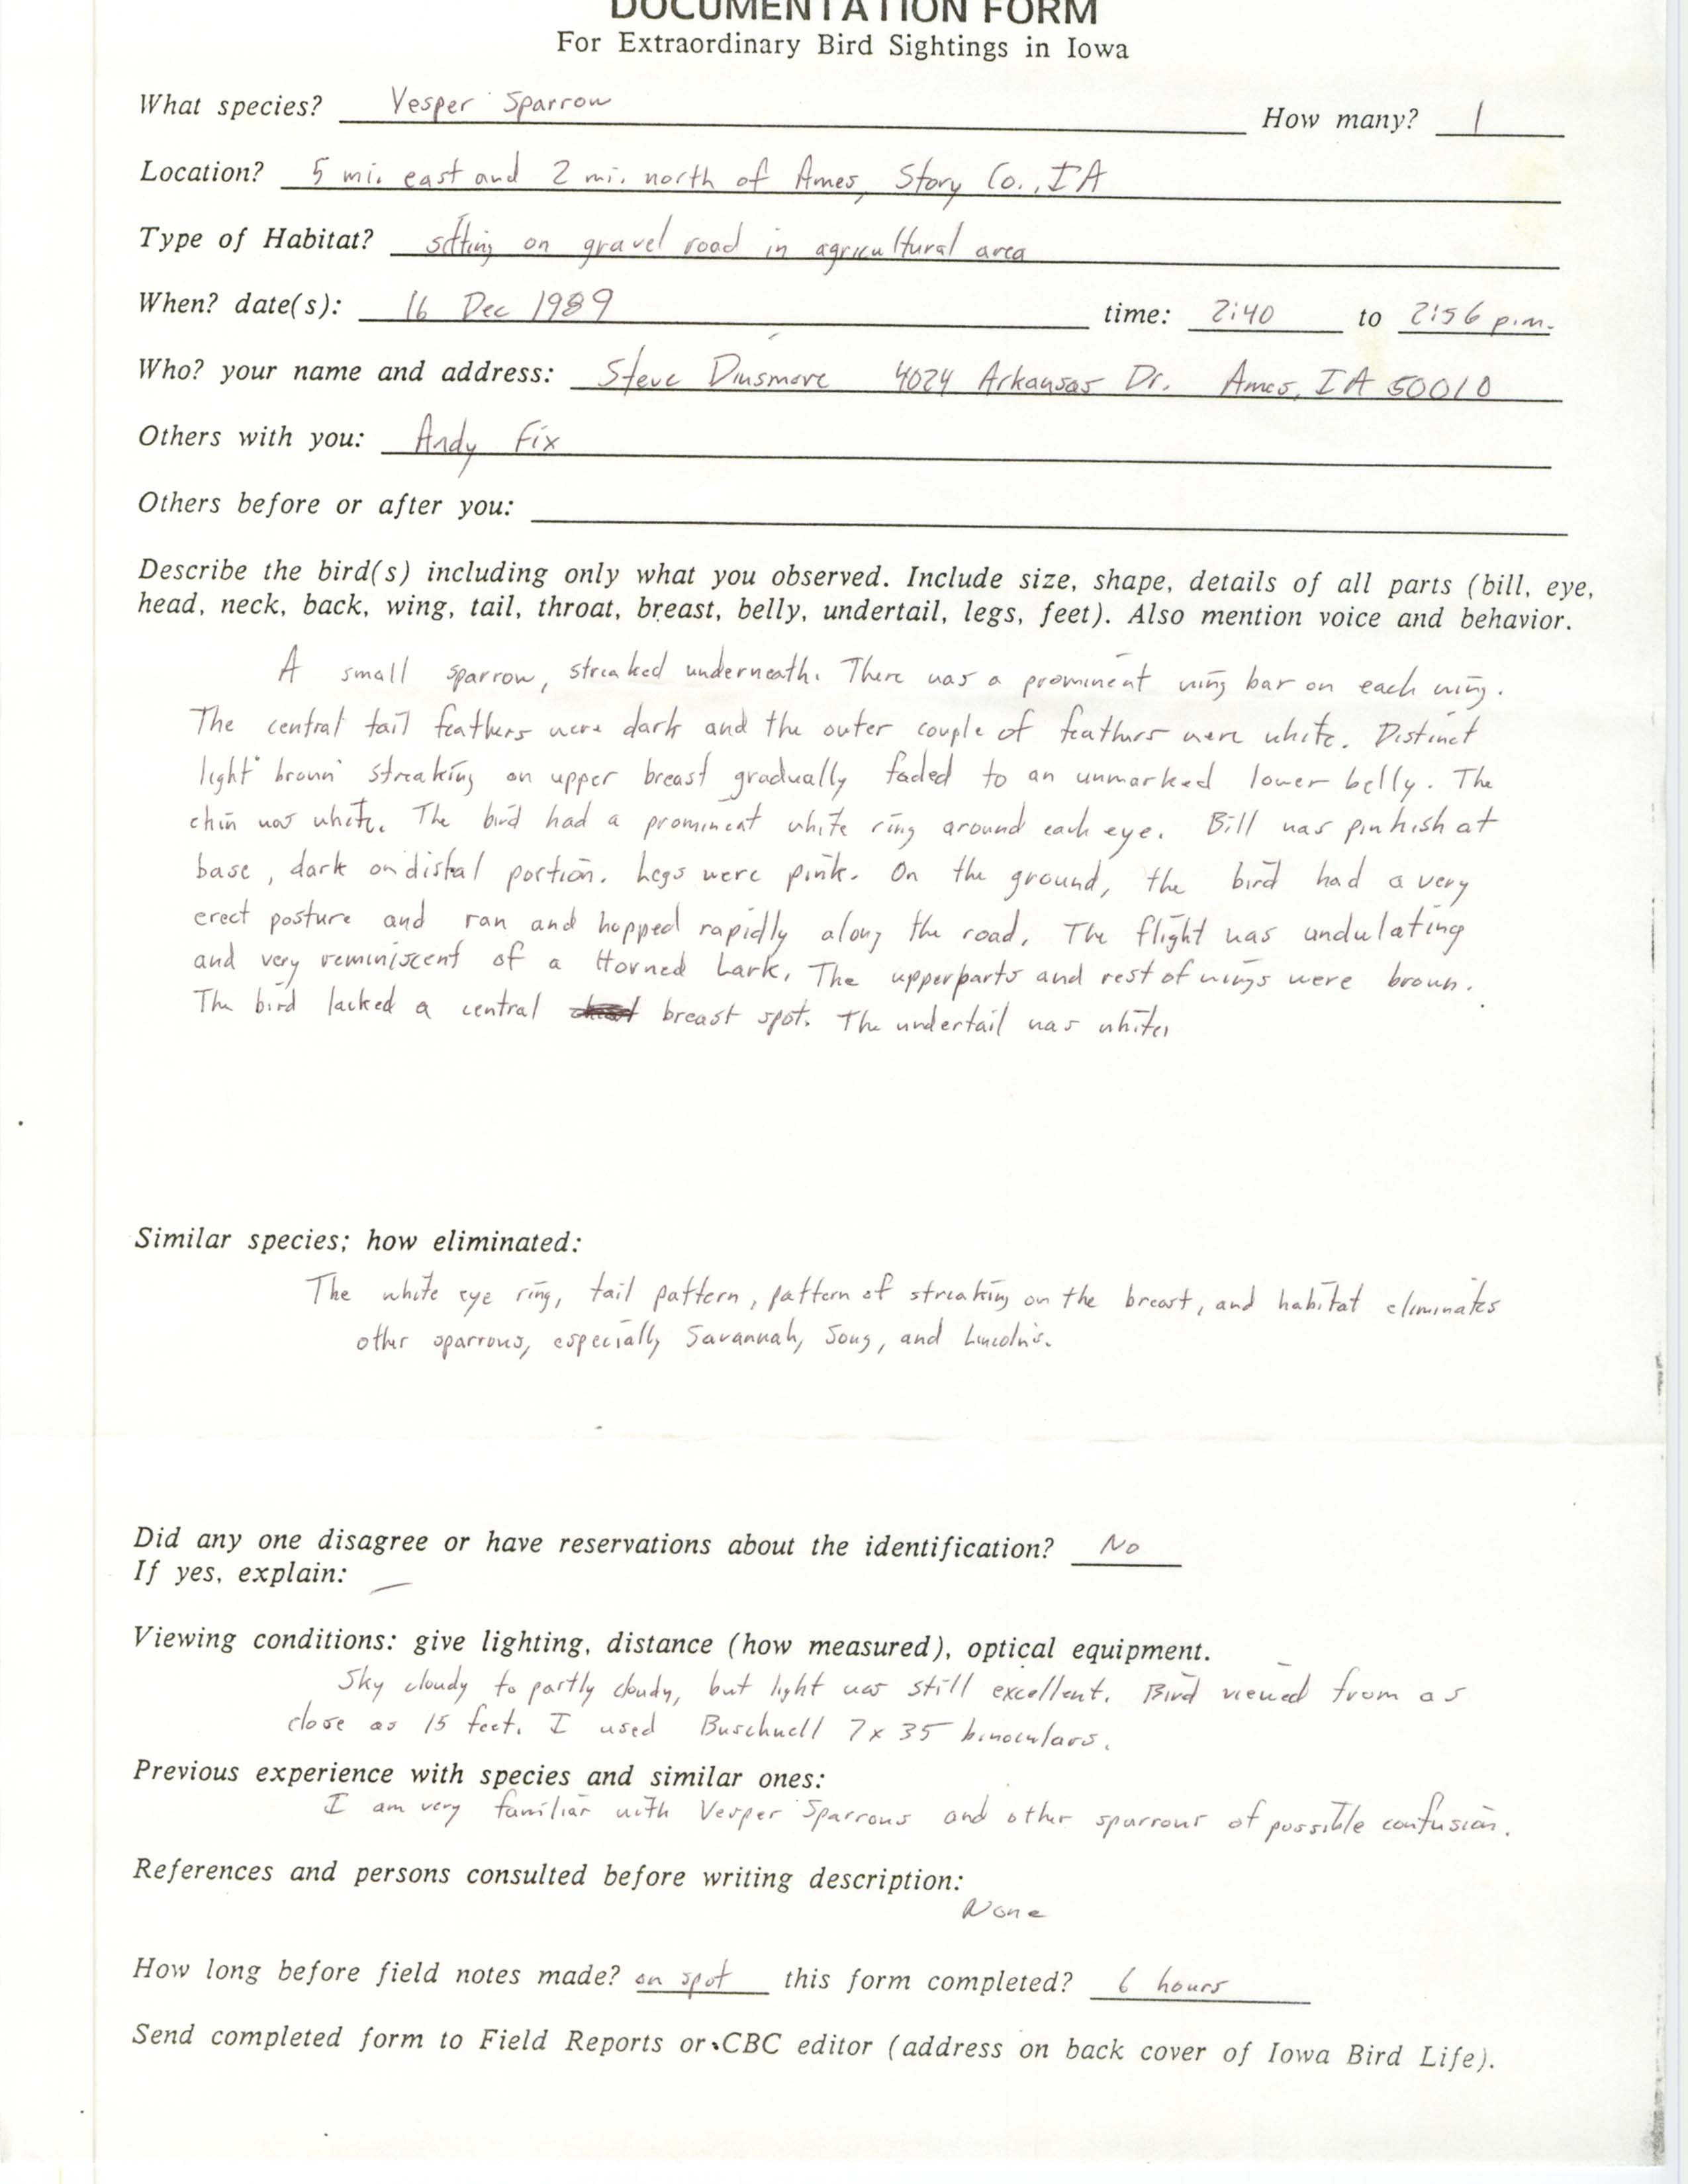 Rare bird documentation form for Vesper Sparrow northeast of Ames, 1989